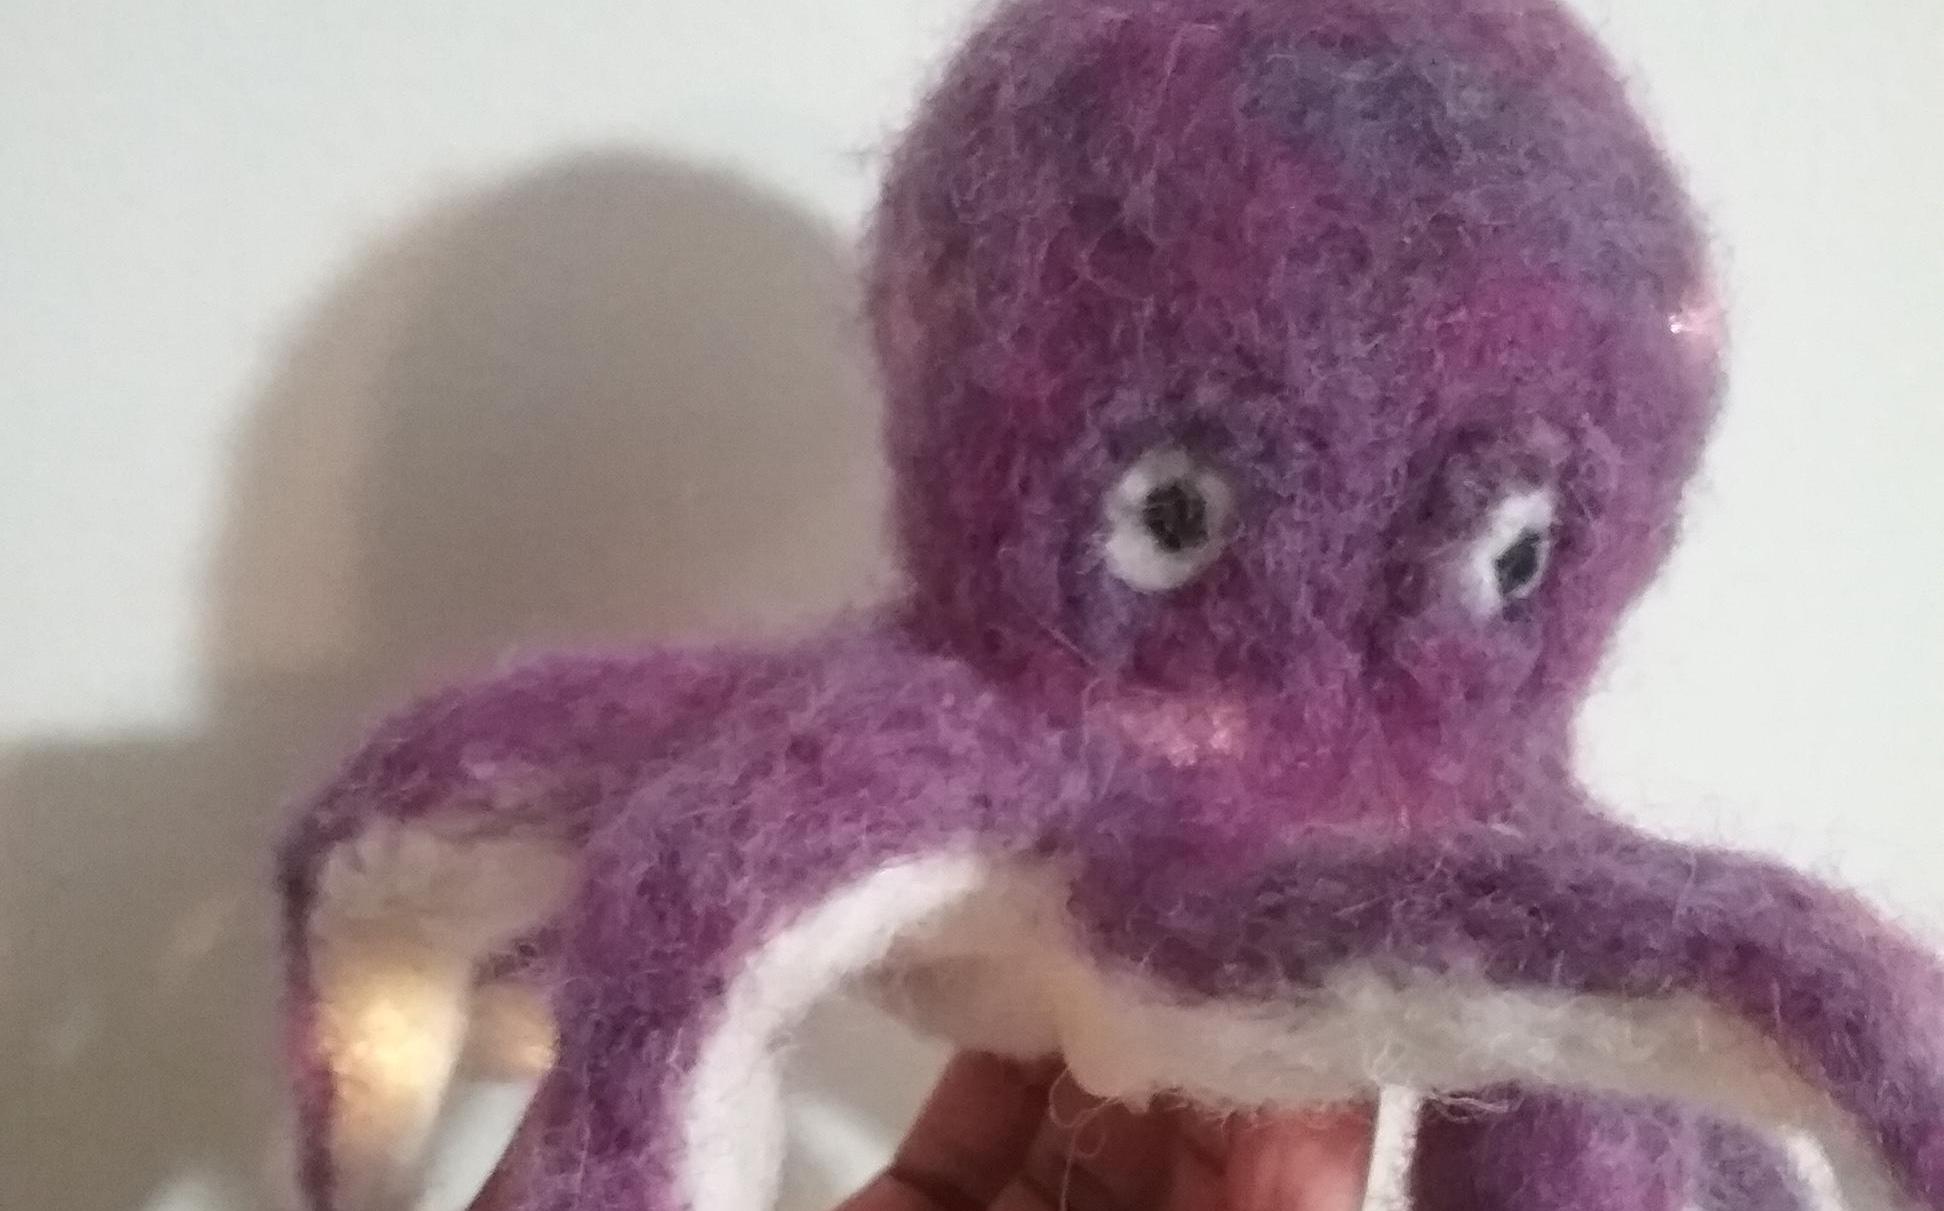 Plush Octopus Lamp, Create Via Needle Felting Wool